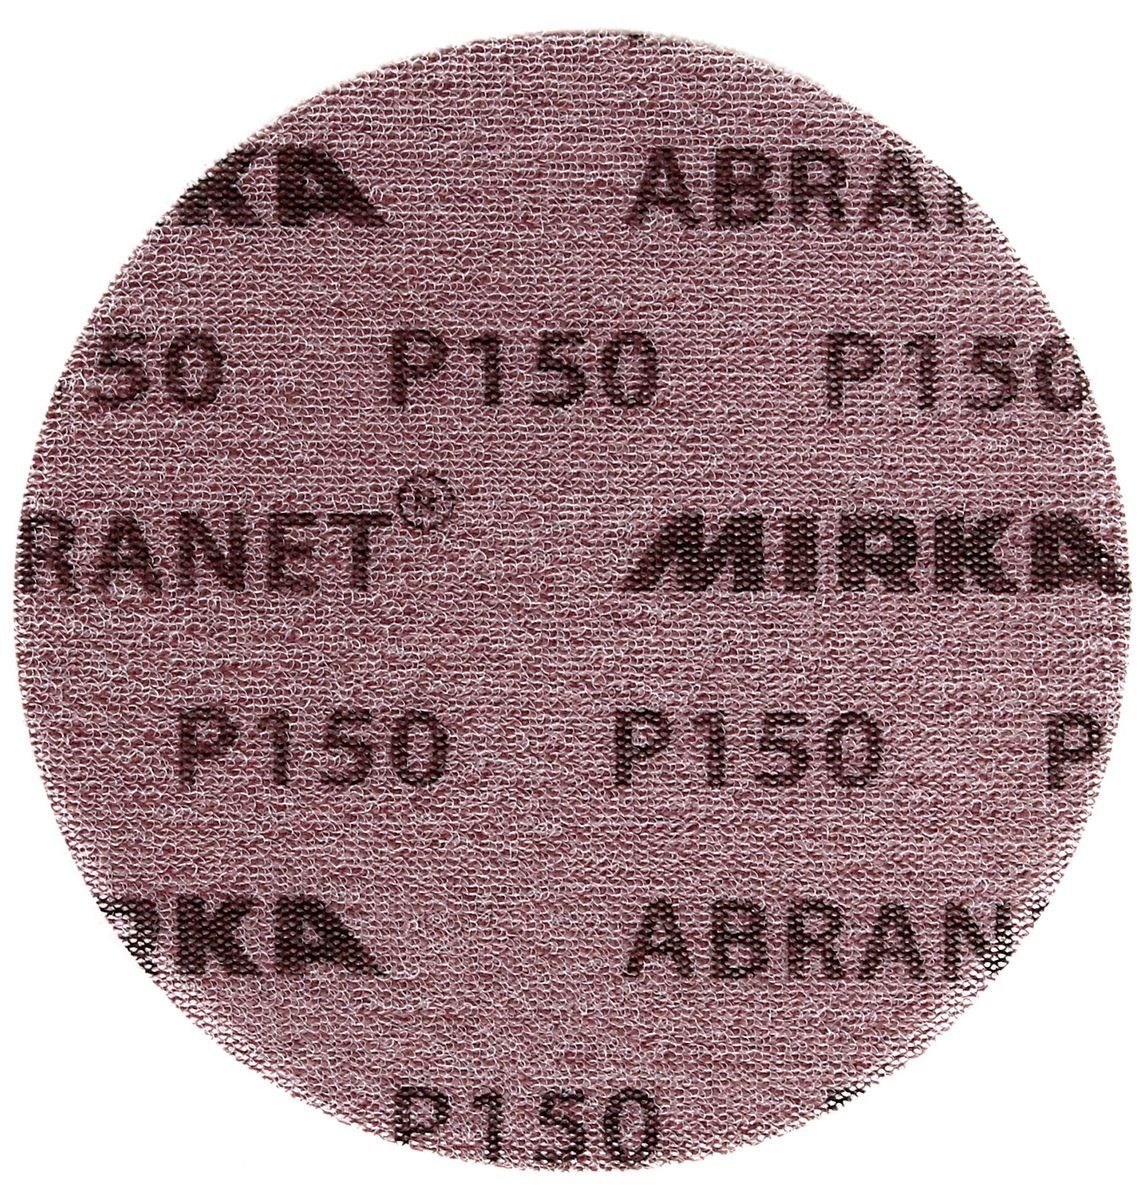 50 150mm ABRANET Mirka Stk. Schleifscheibe P150 Grip (5424105015) Schleifscheiben